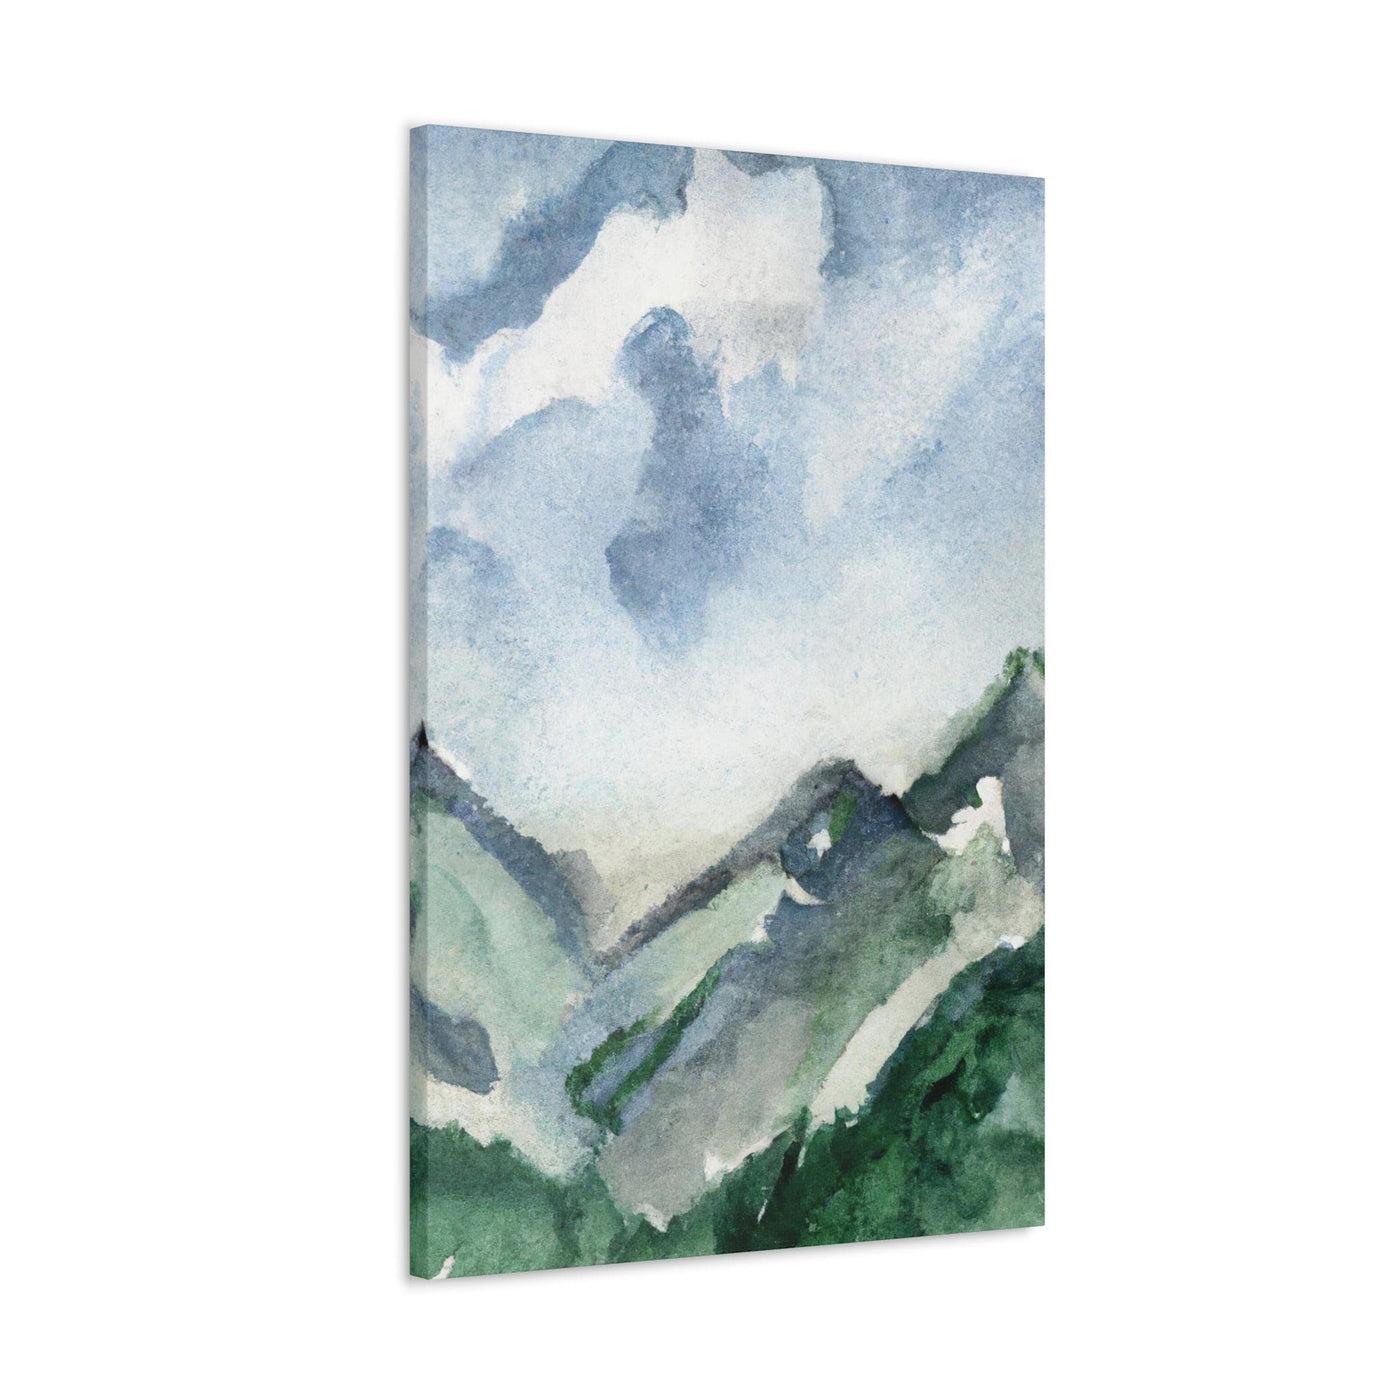 Wall Art Decor Canvas Print Artwork Green Mountainside Nature Landscape Blue